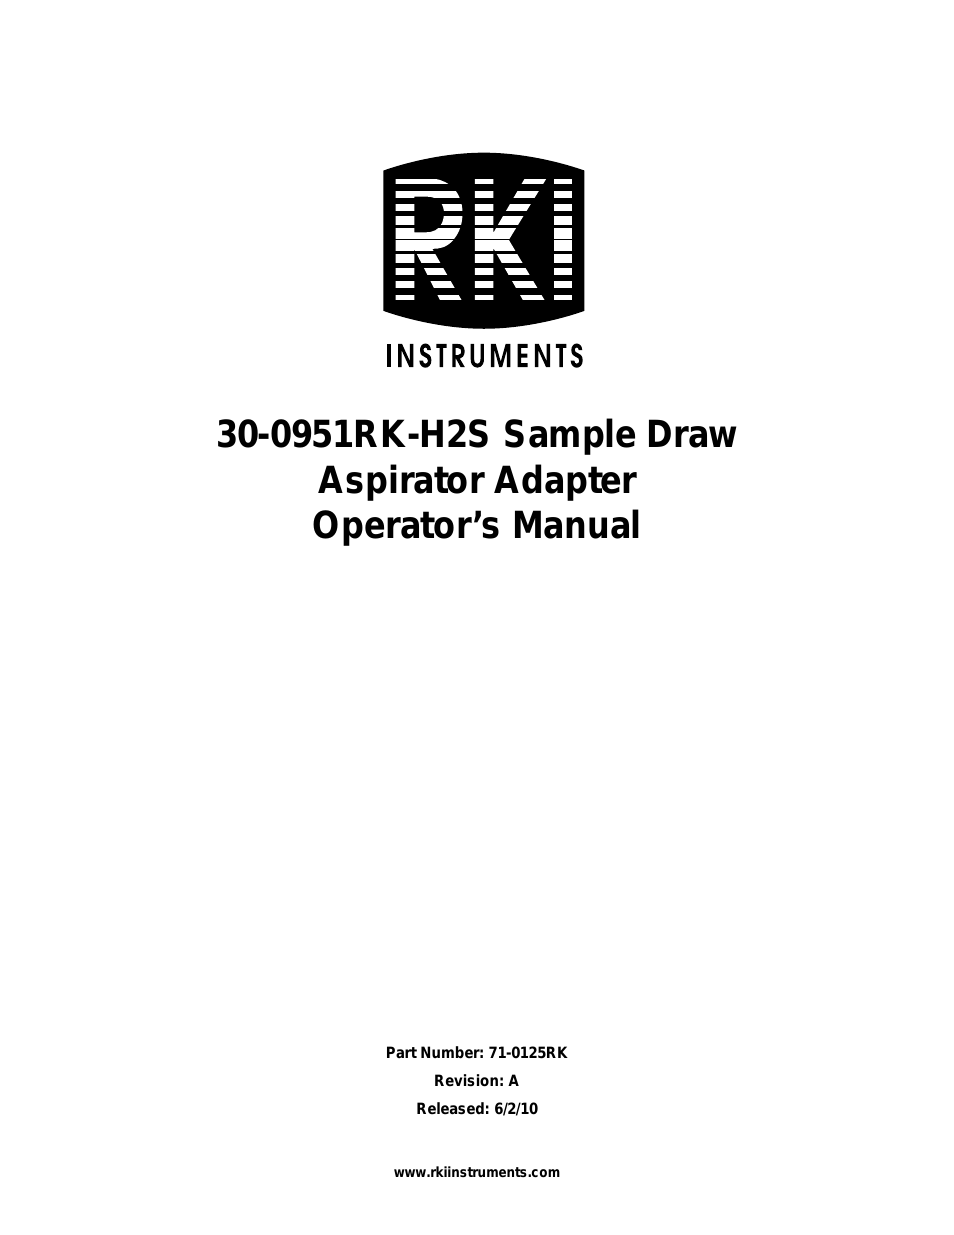 30-0951RK-H2S